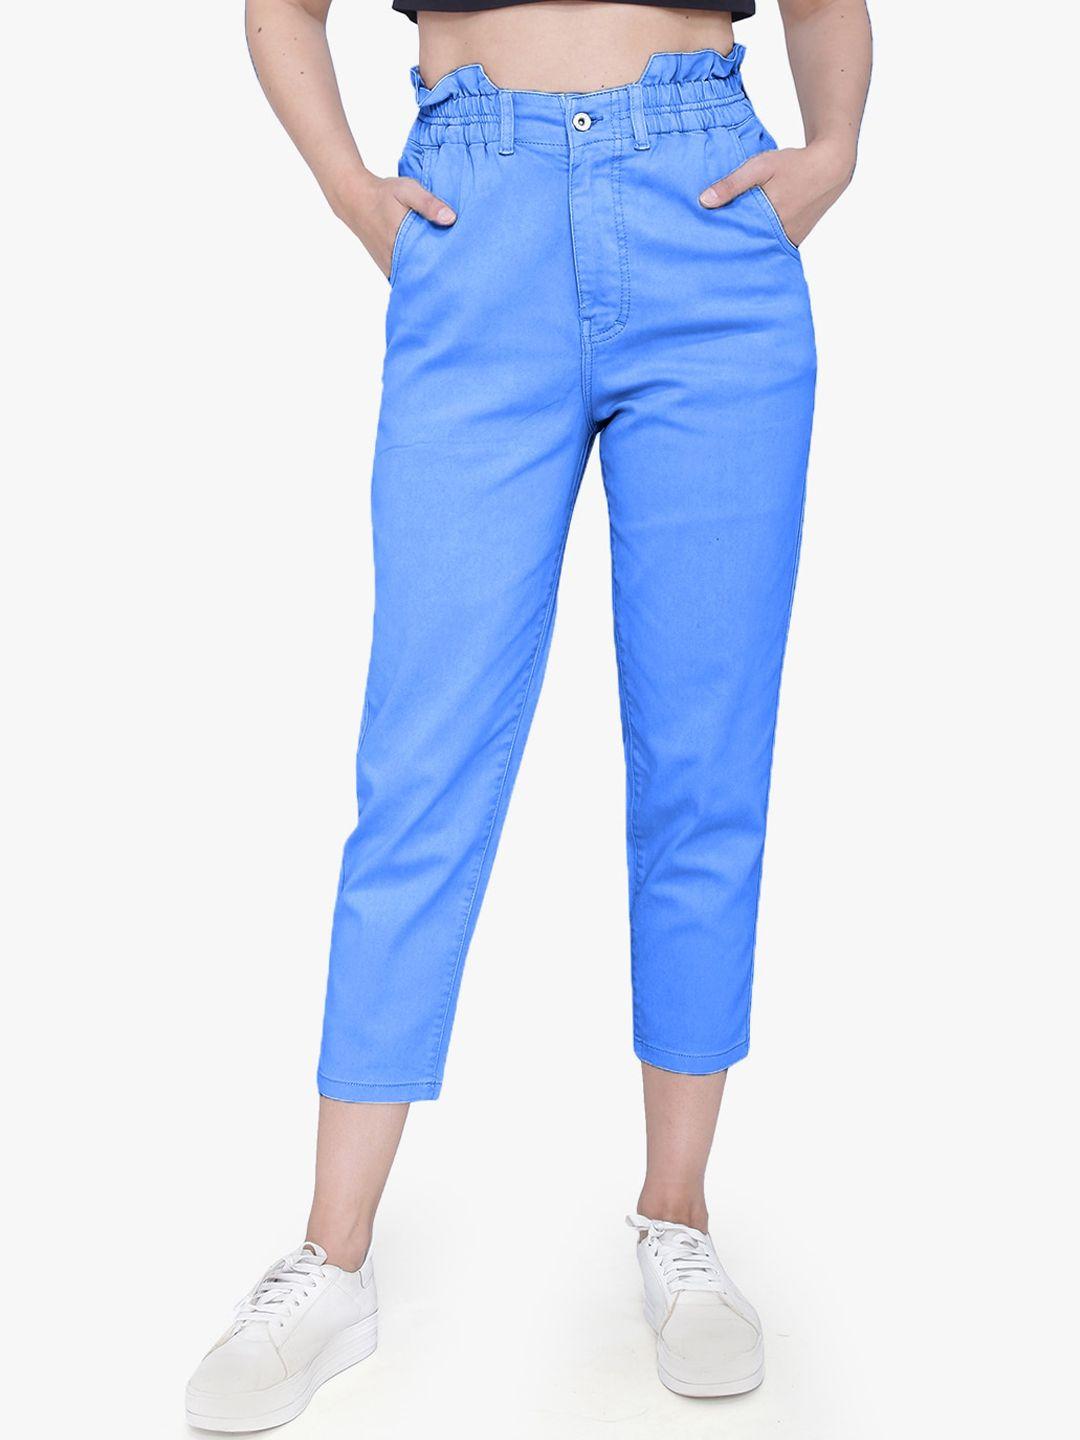 fck-3 women cotton frisky high-rise stretchable jeans